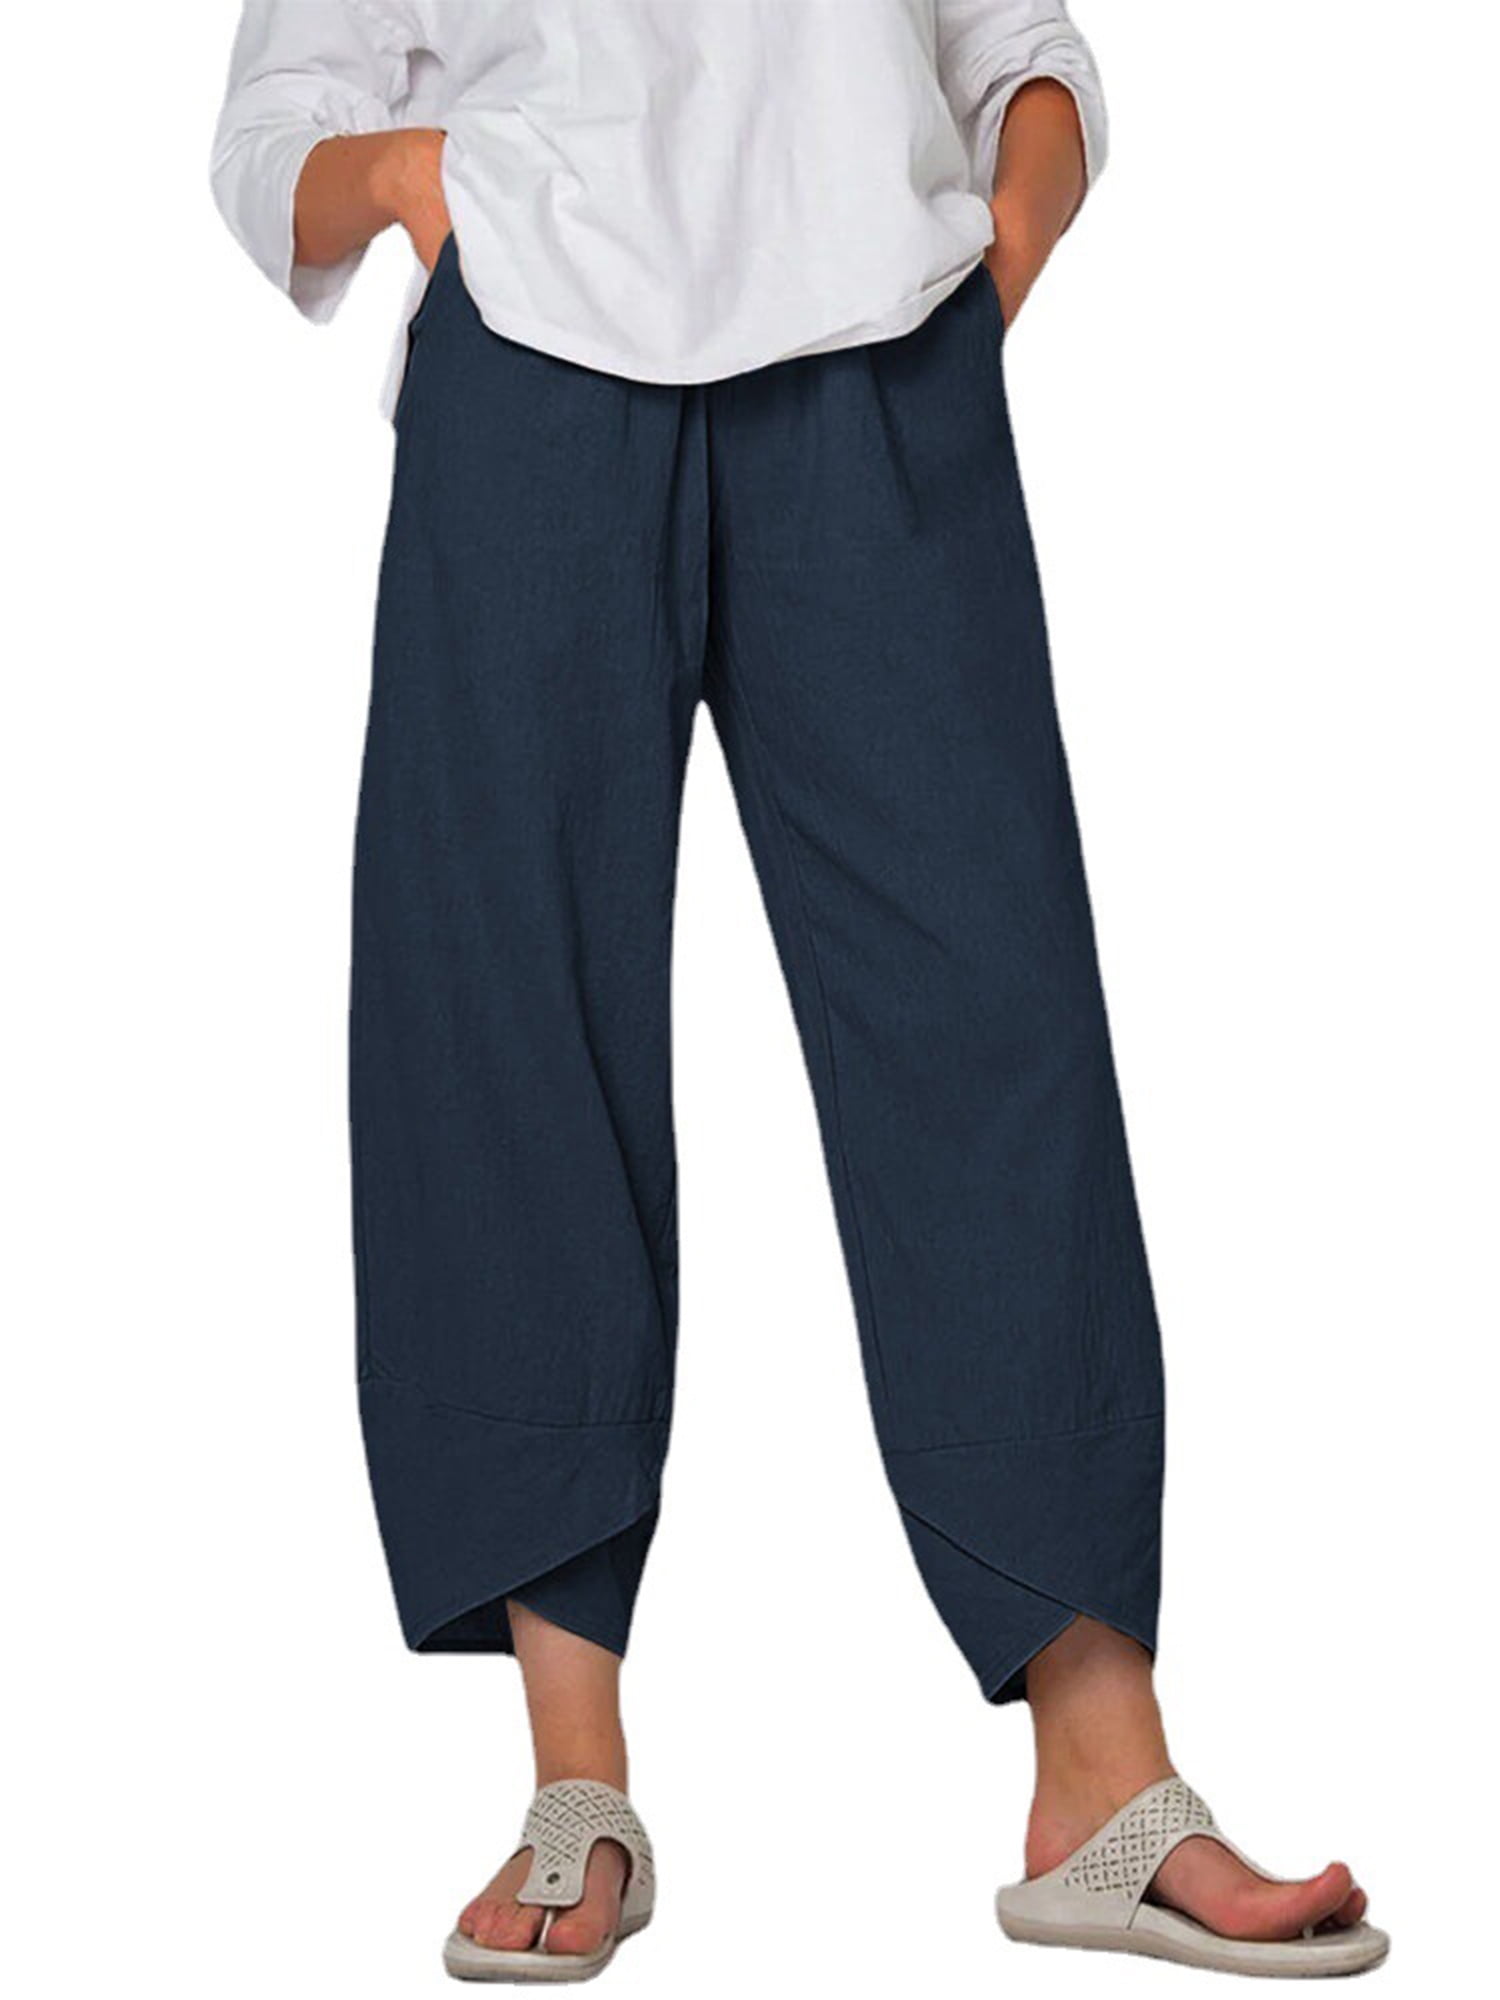 TFFR S-5XL Women Plus Size Pants Yoga Harem Joggers Trousers Solid ...